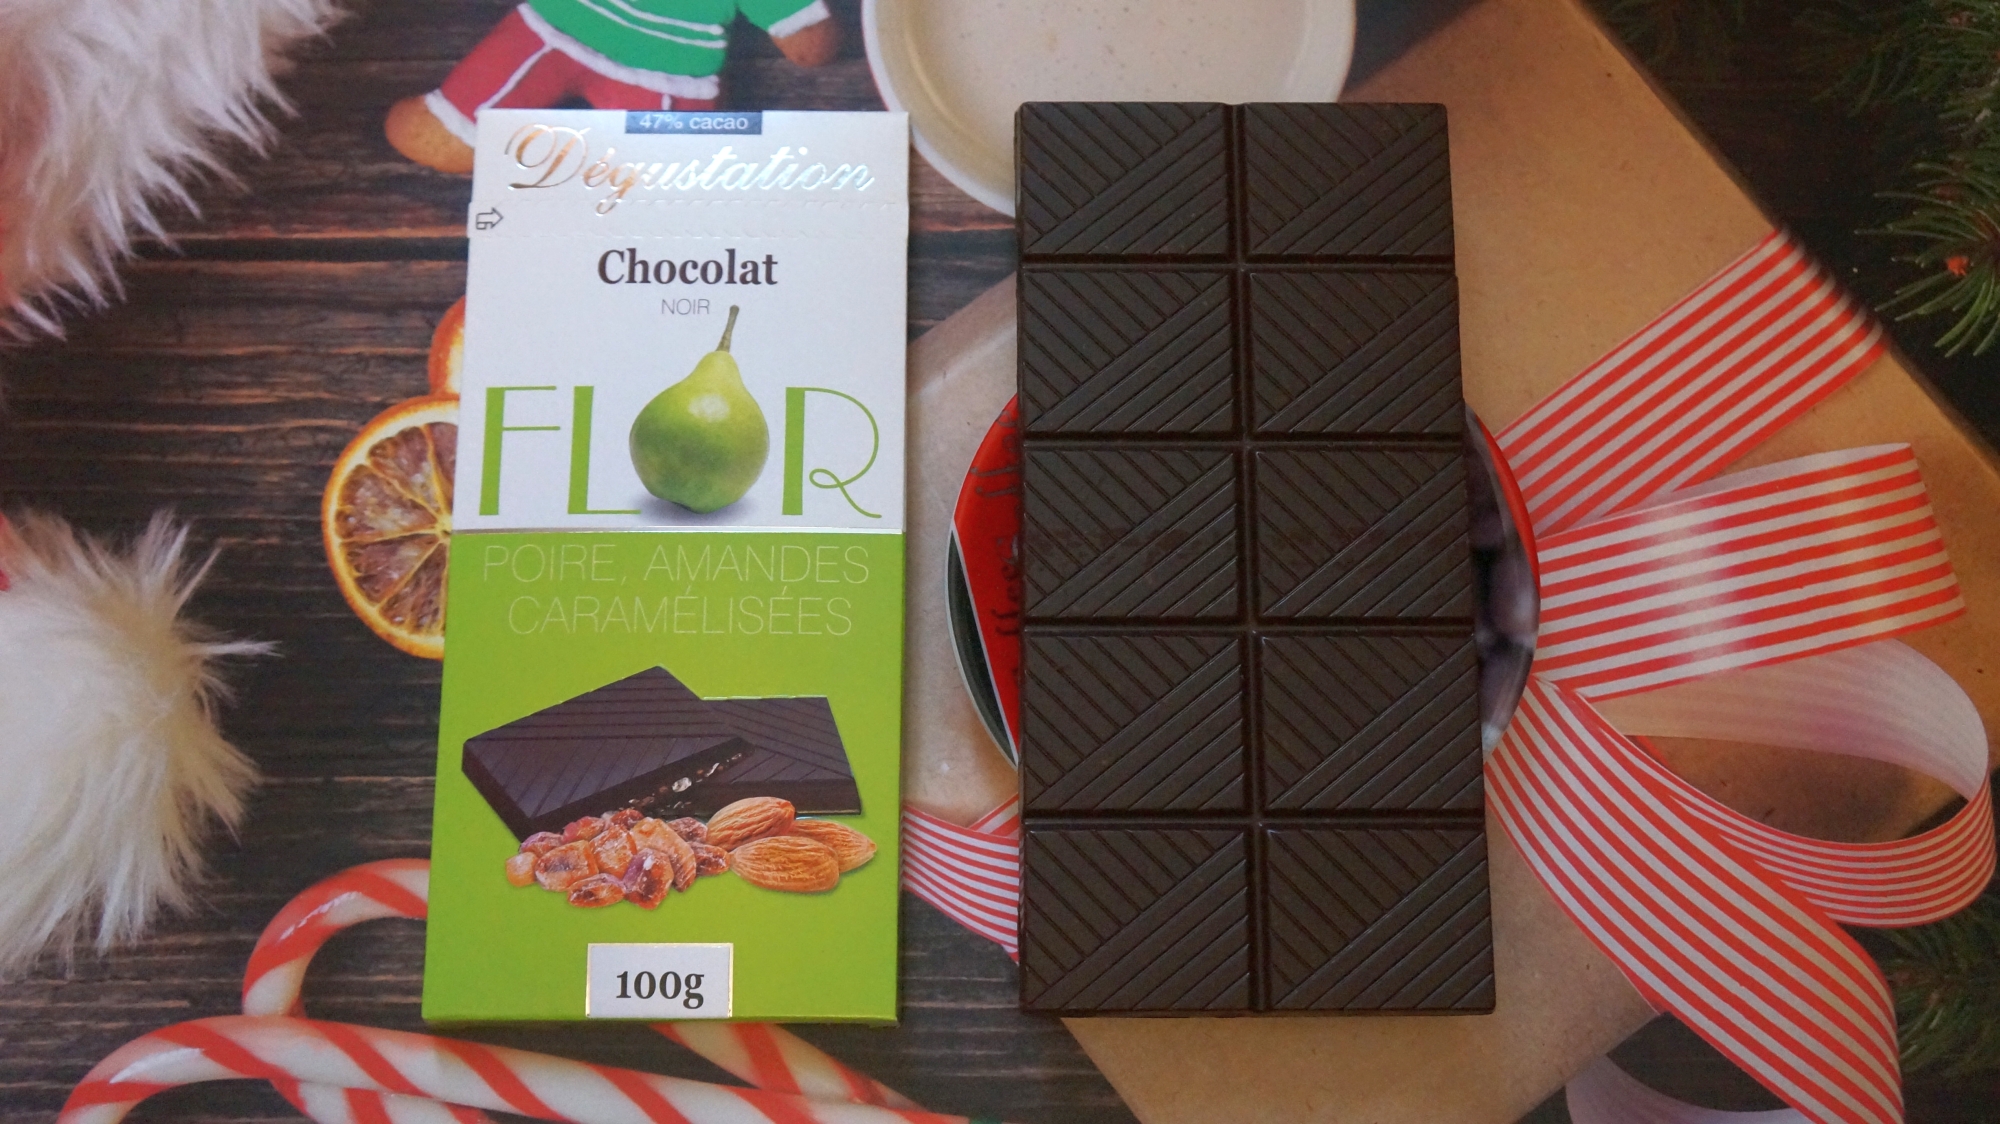 Шоколад Flor Degustation Noir Poire Amandes Caramélisées